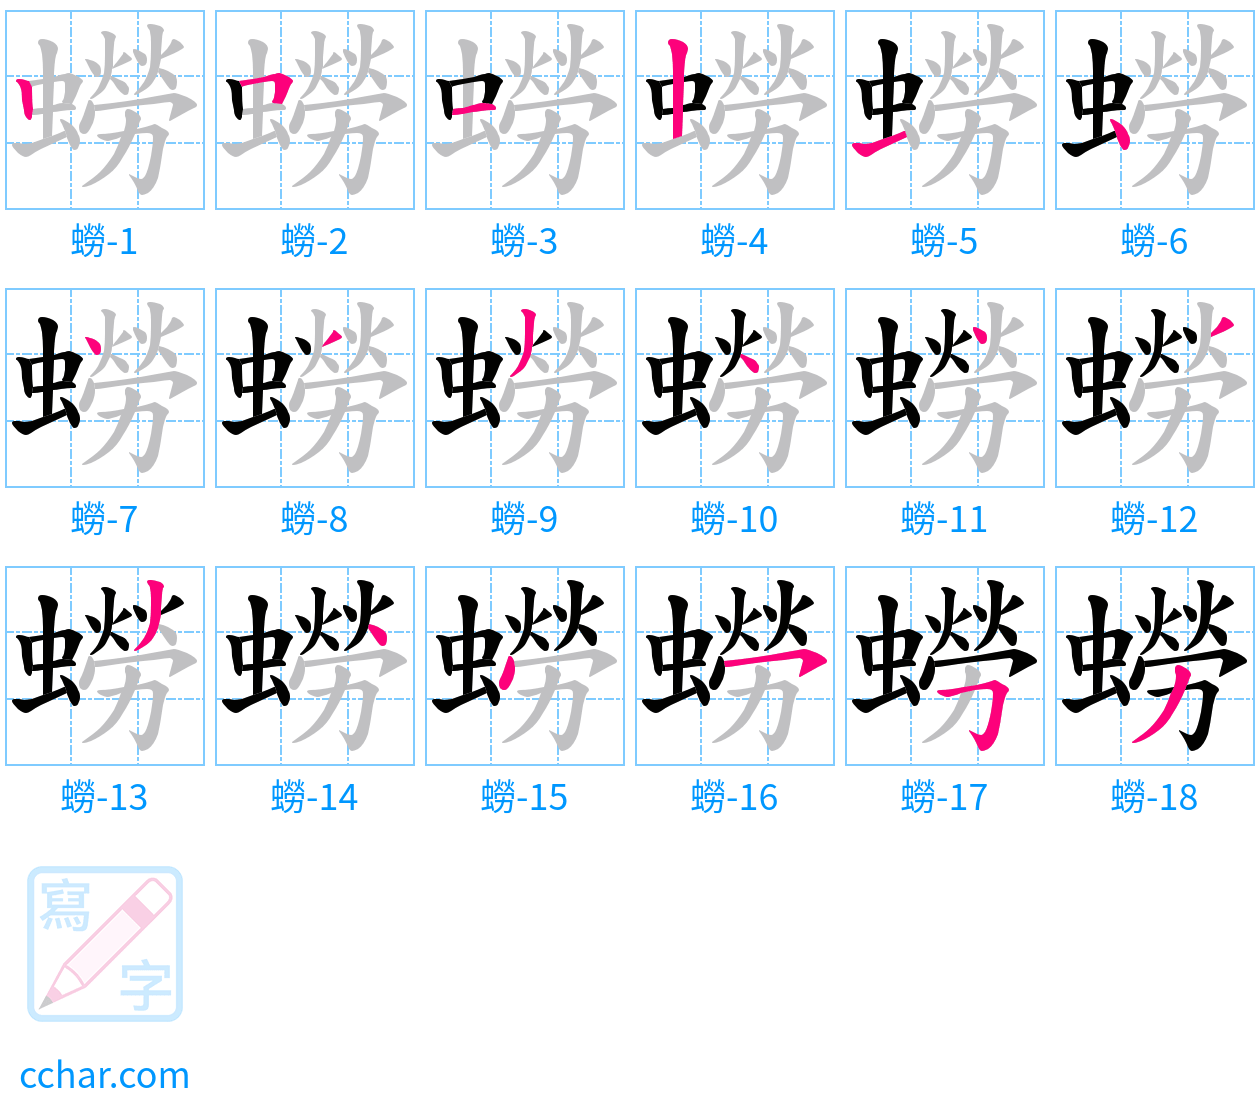 蟧 stroke order step-by-step diagram